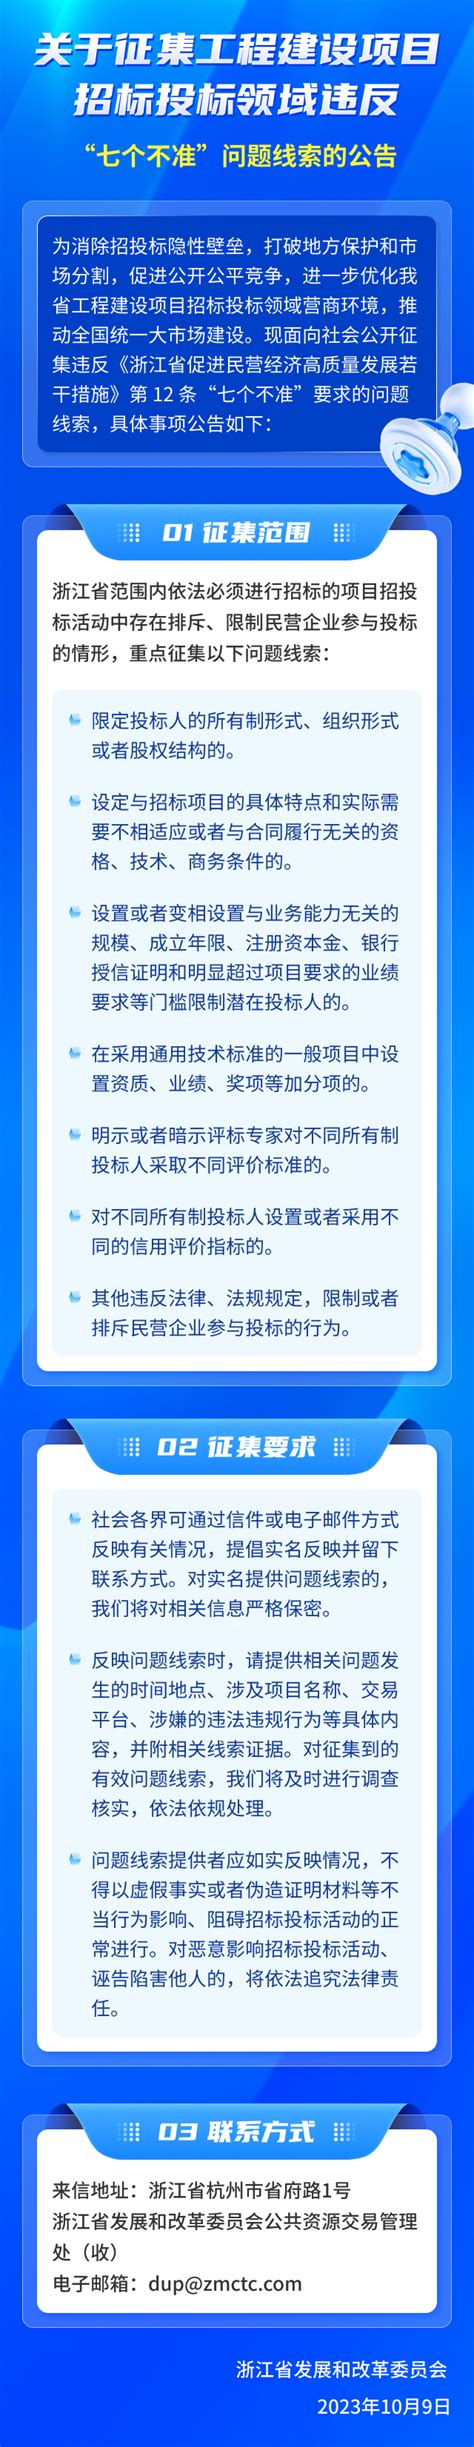 杭州市公共资源交易平台